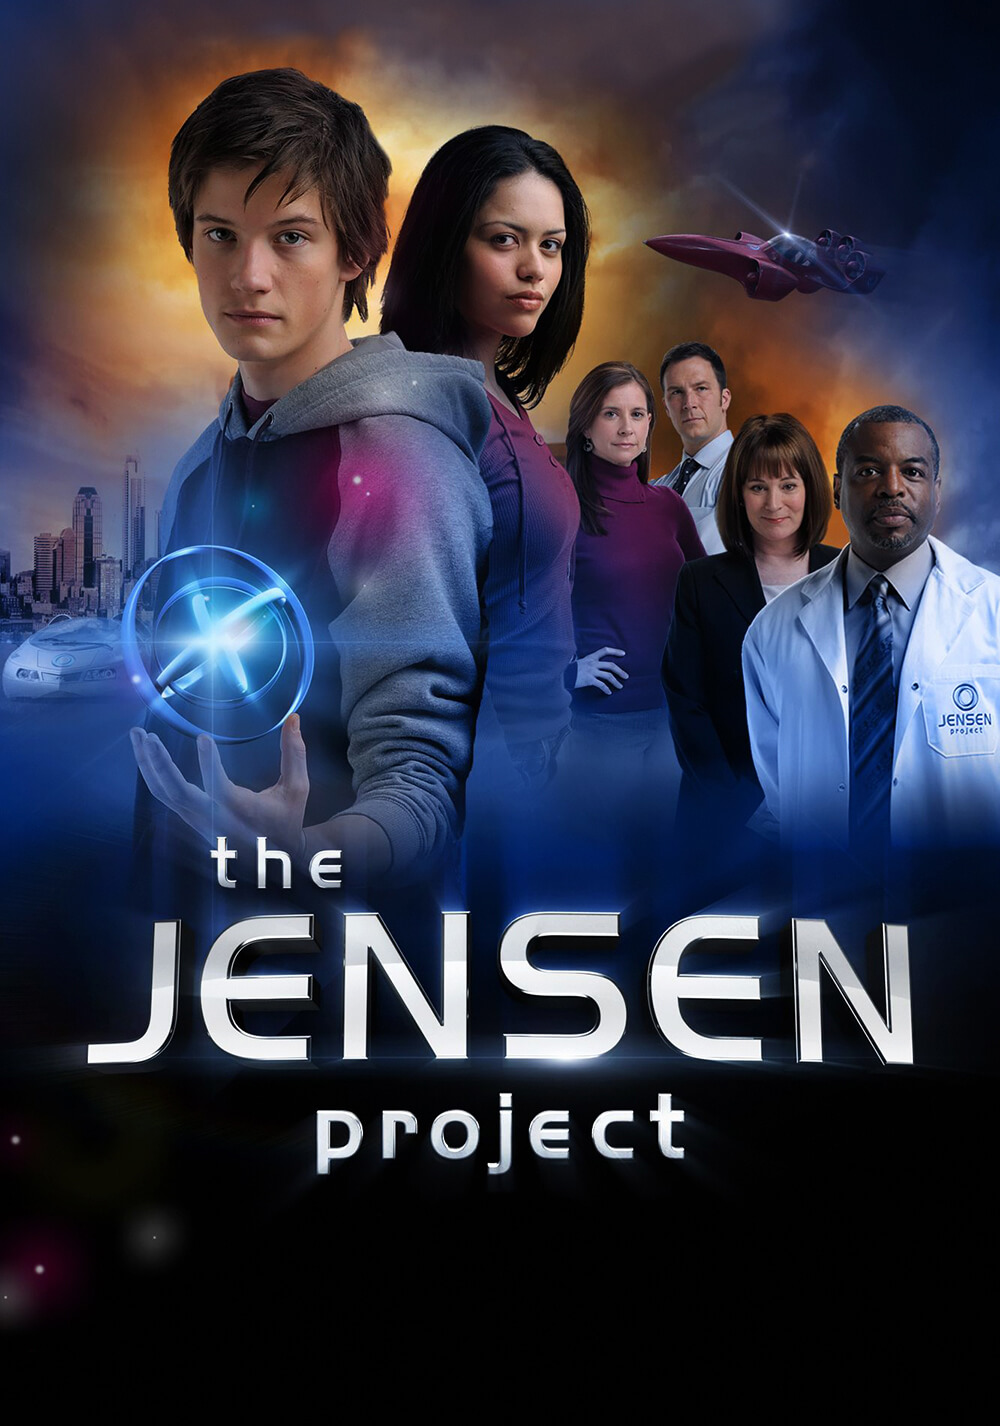 پروژه جنسن (The Jensen Project)